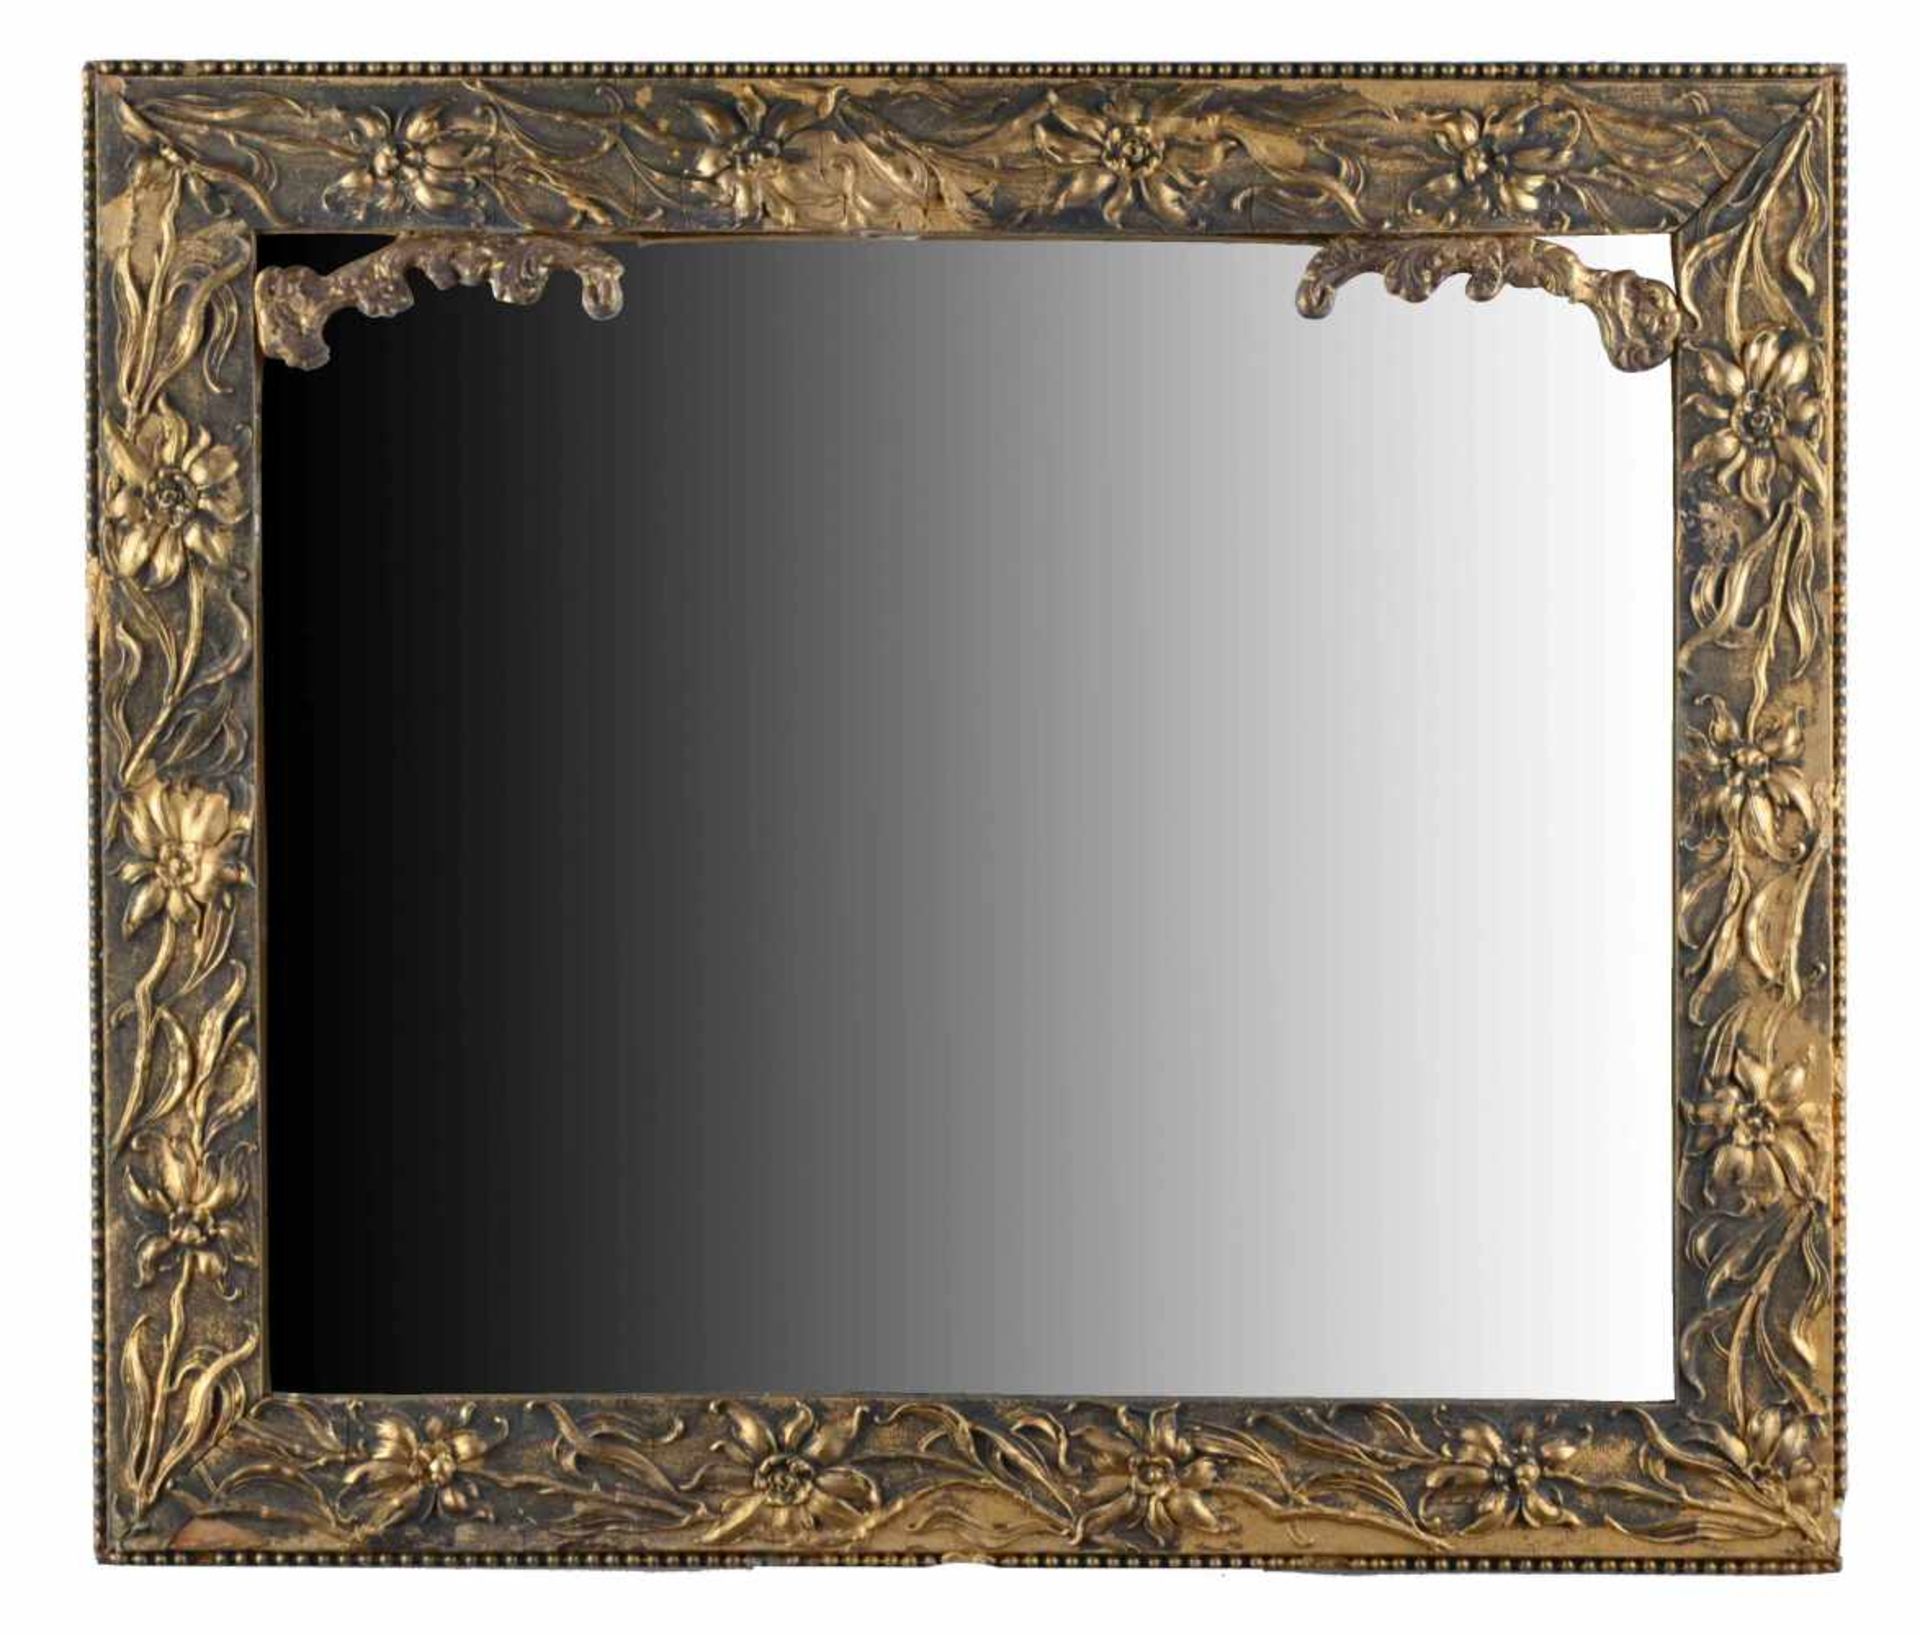 Jugendstil Spiegelverzierter Holzrahmen, 72,5 cm x 62 cmArt Nouveau mirrordecorated wooden frame,